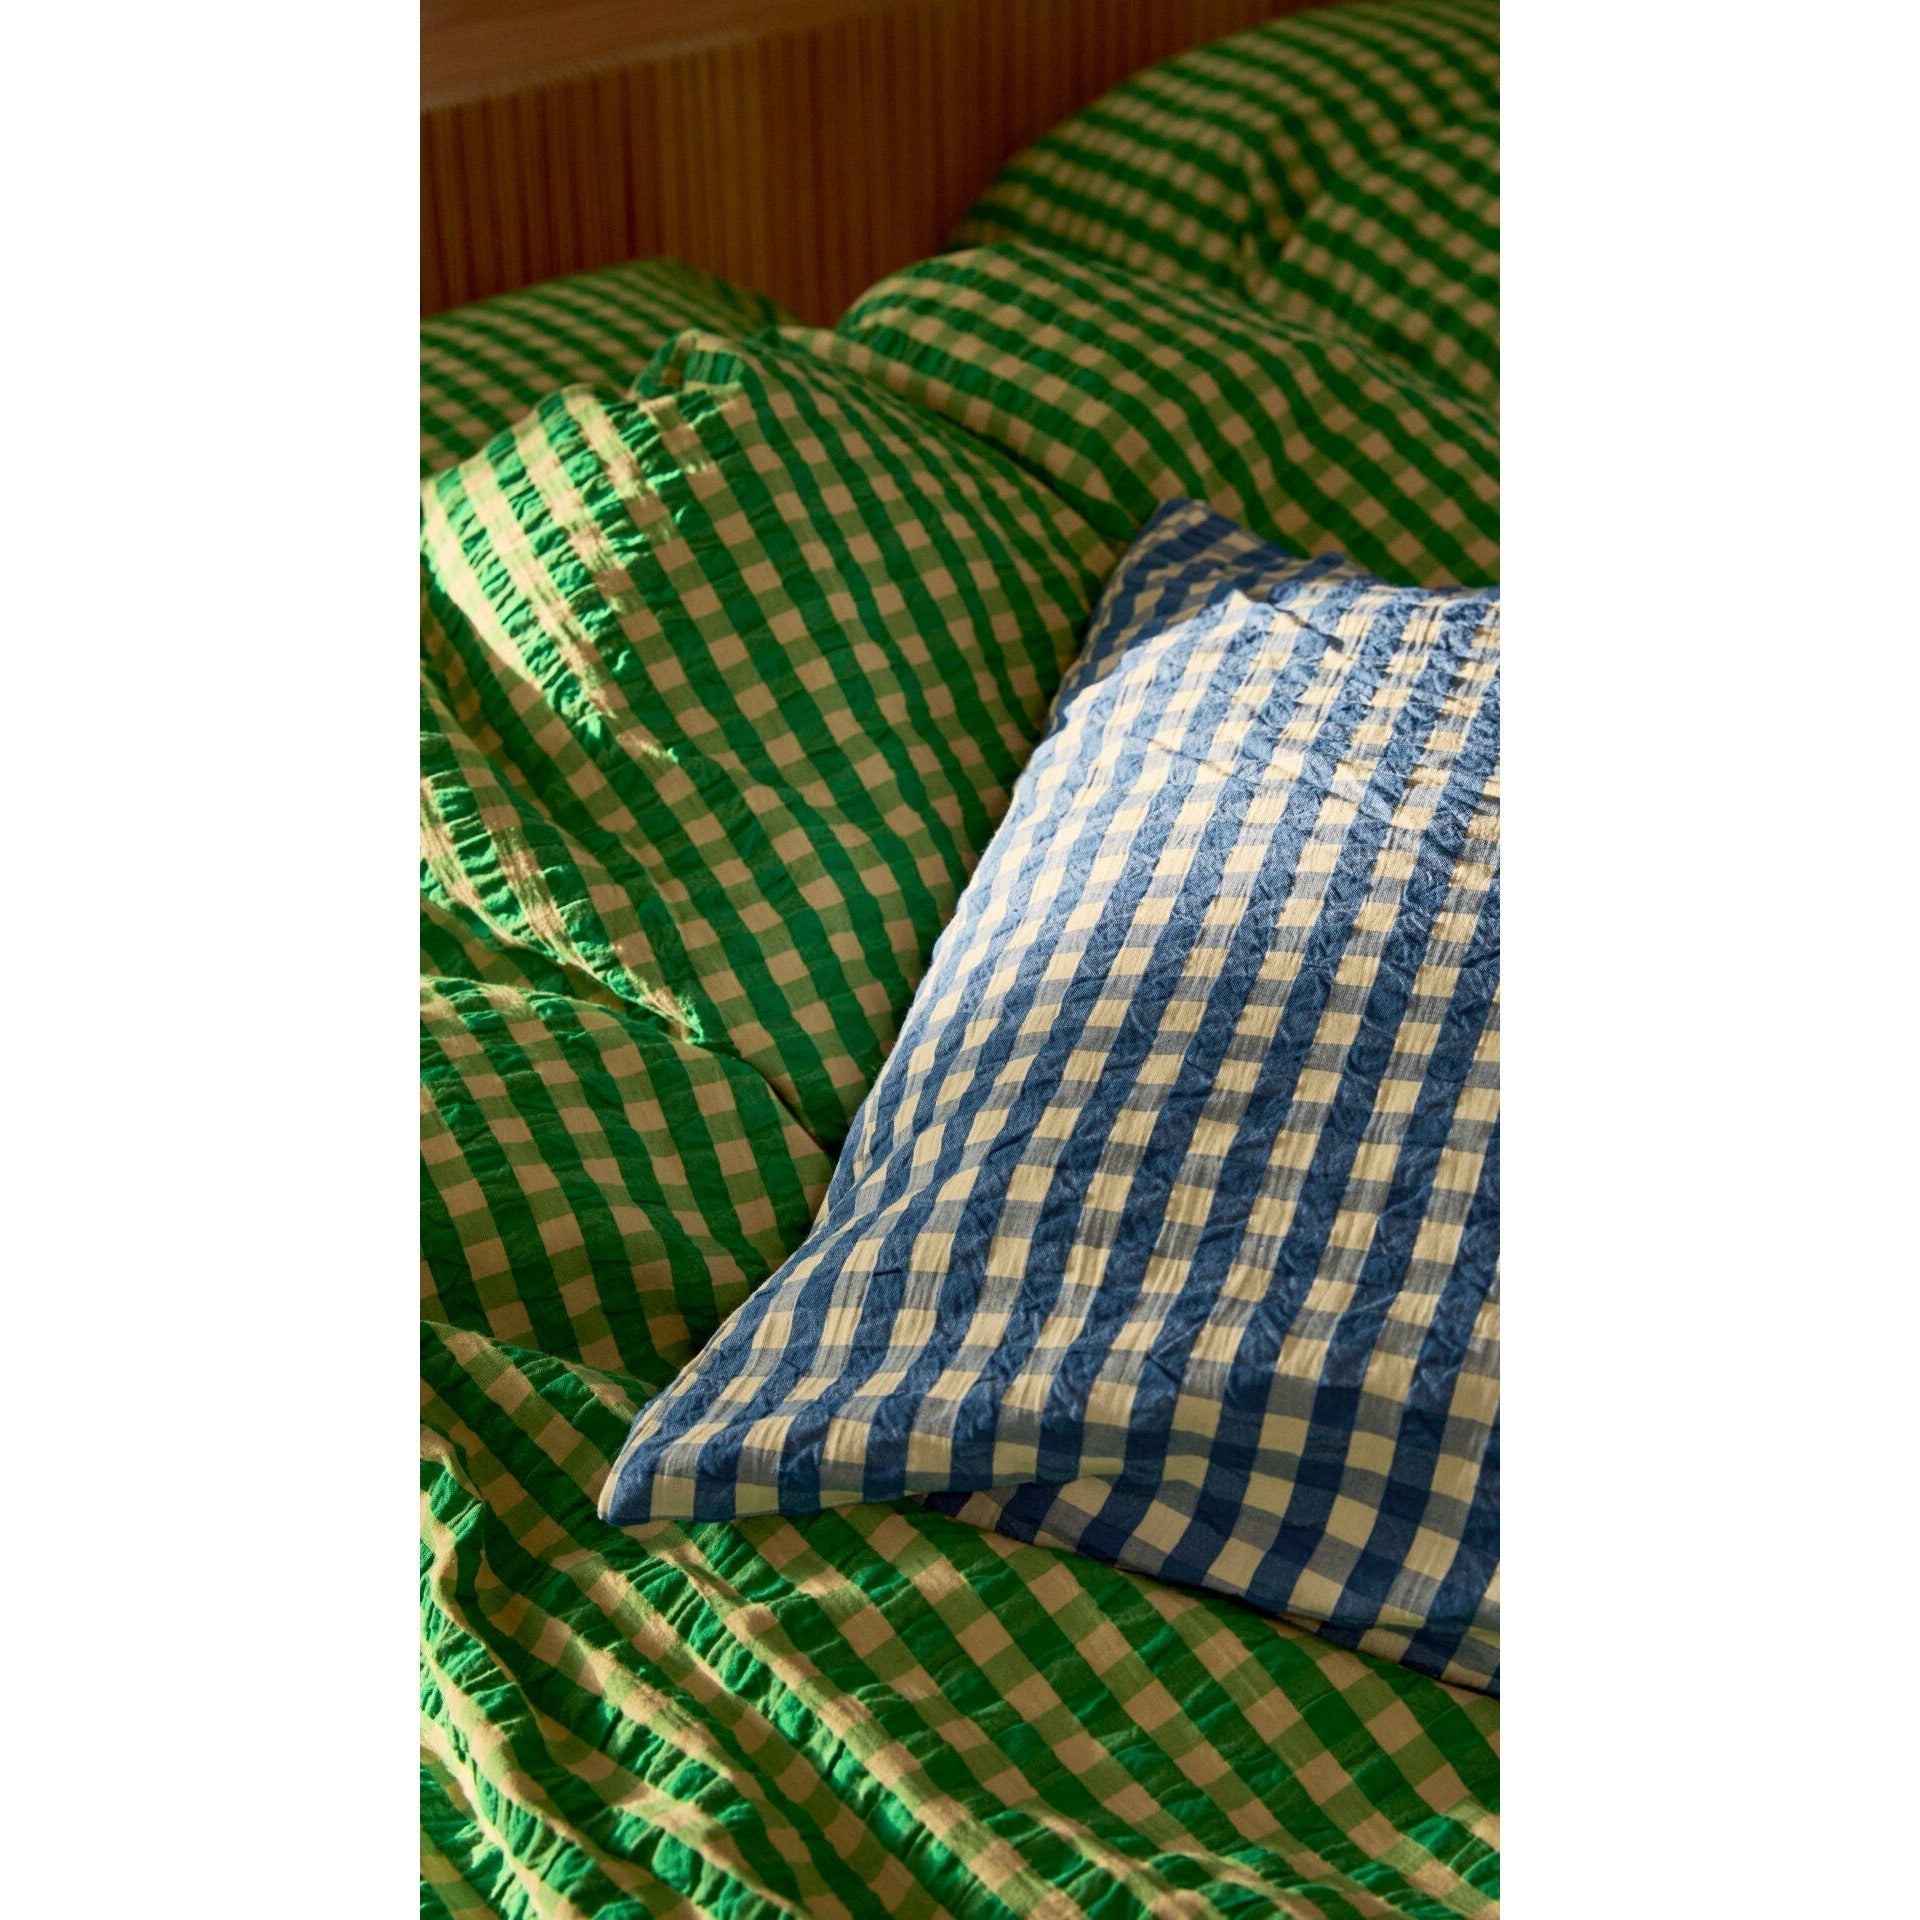 Juna Bæk & Wave -sängkläder 140x200 cm, grön/sand